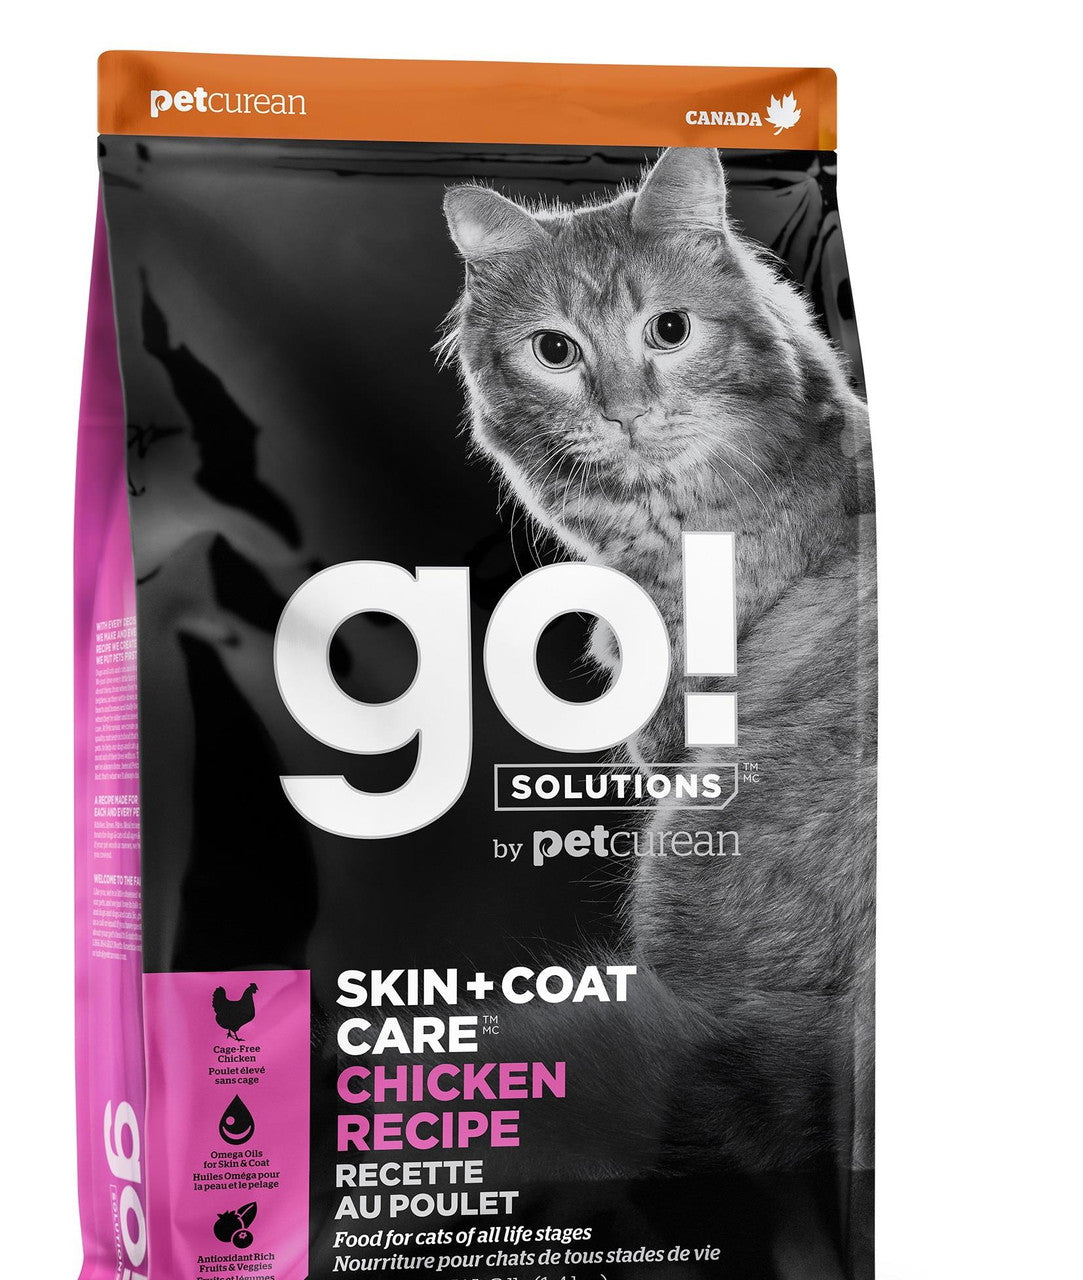 Petcurean Go! Skin & Coat Care Chicken Recipe for Cats 8lb {L-1}152221 815260002998